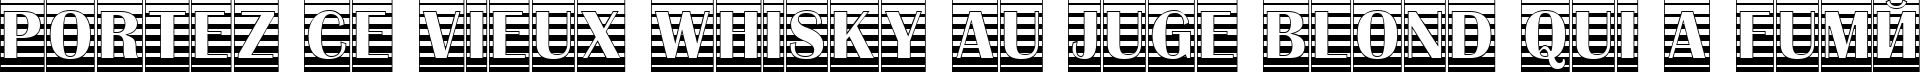 Пример написания шрифтом a_AlbionicTitulCmGrd текста на французском